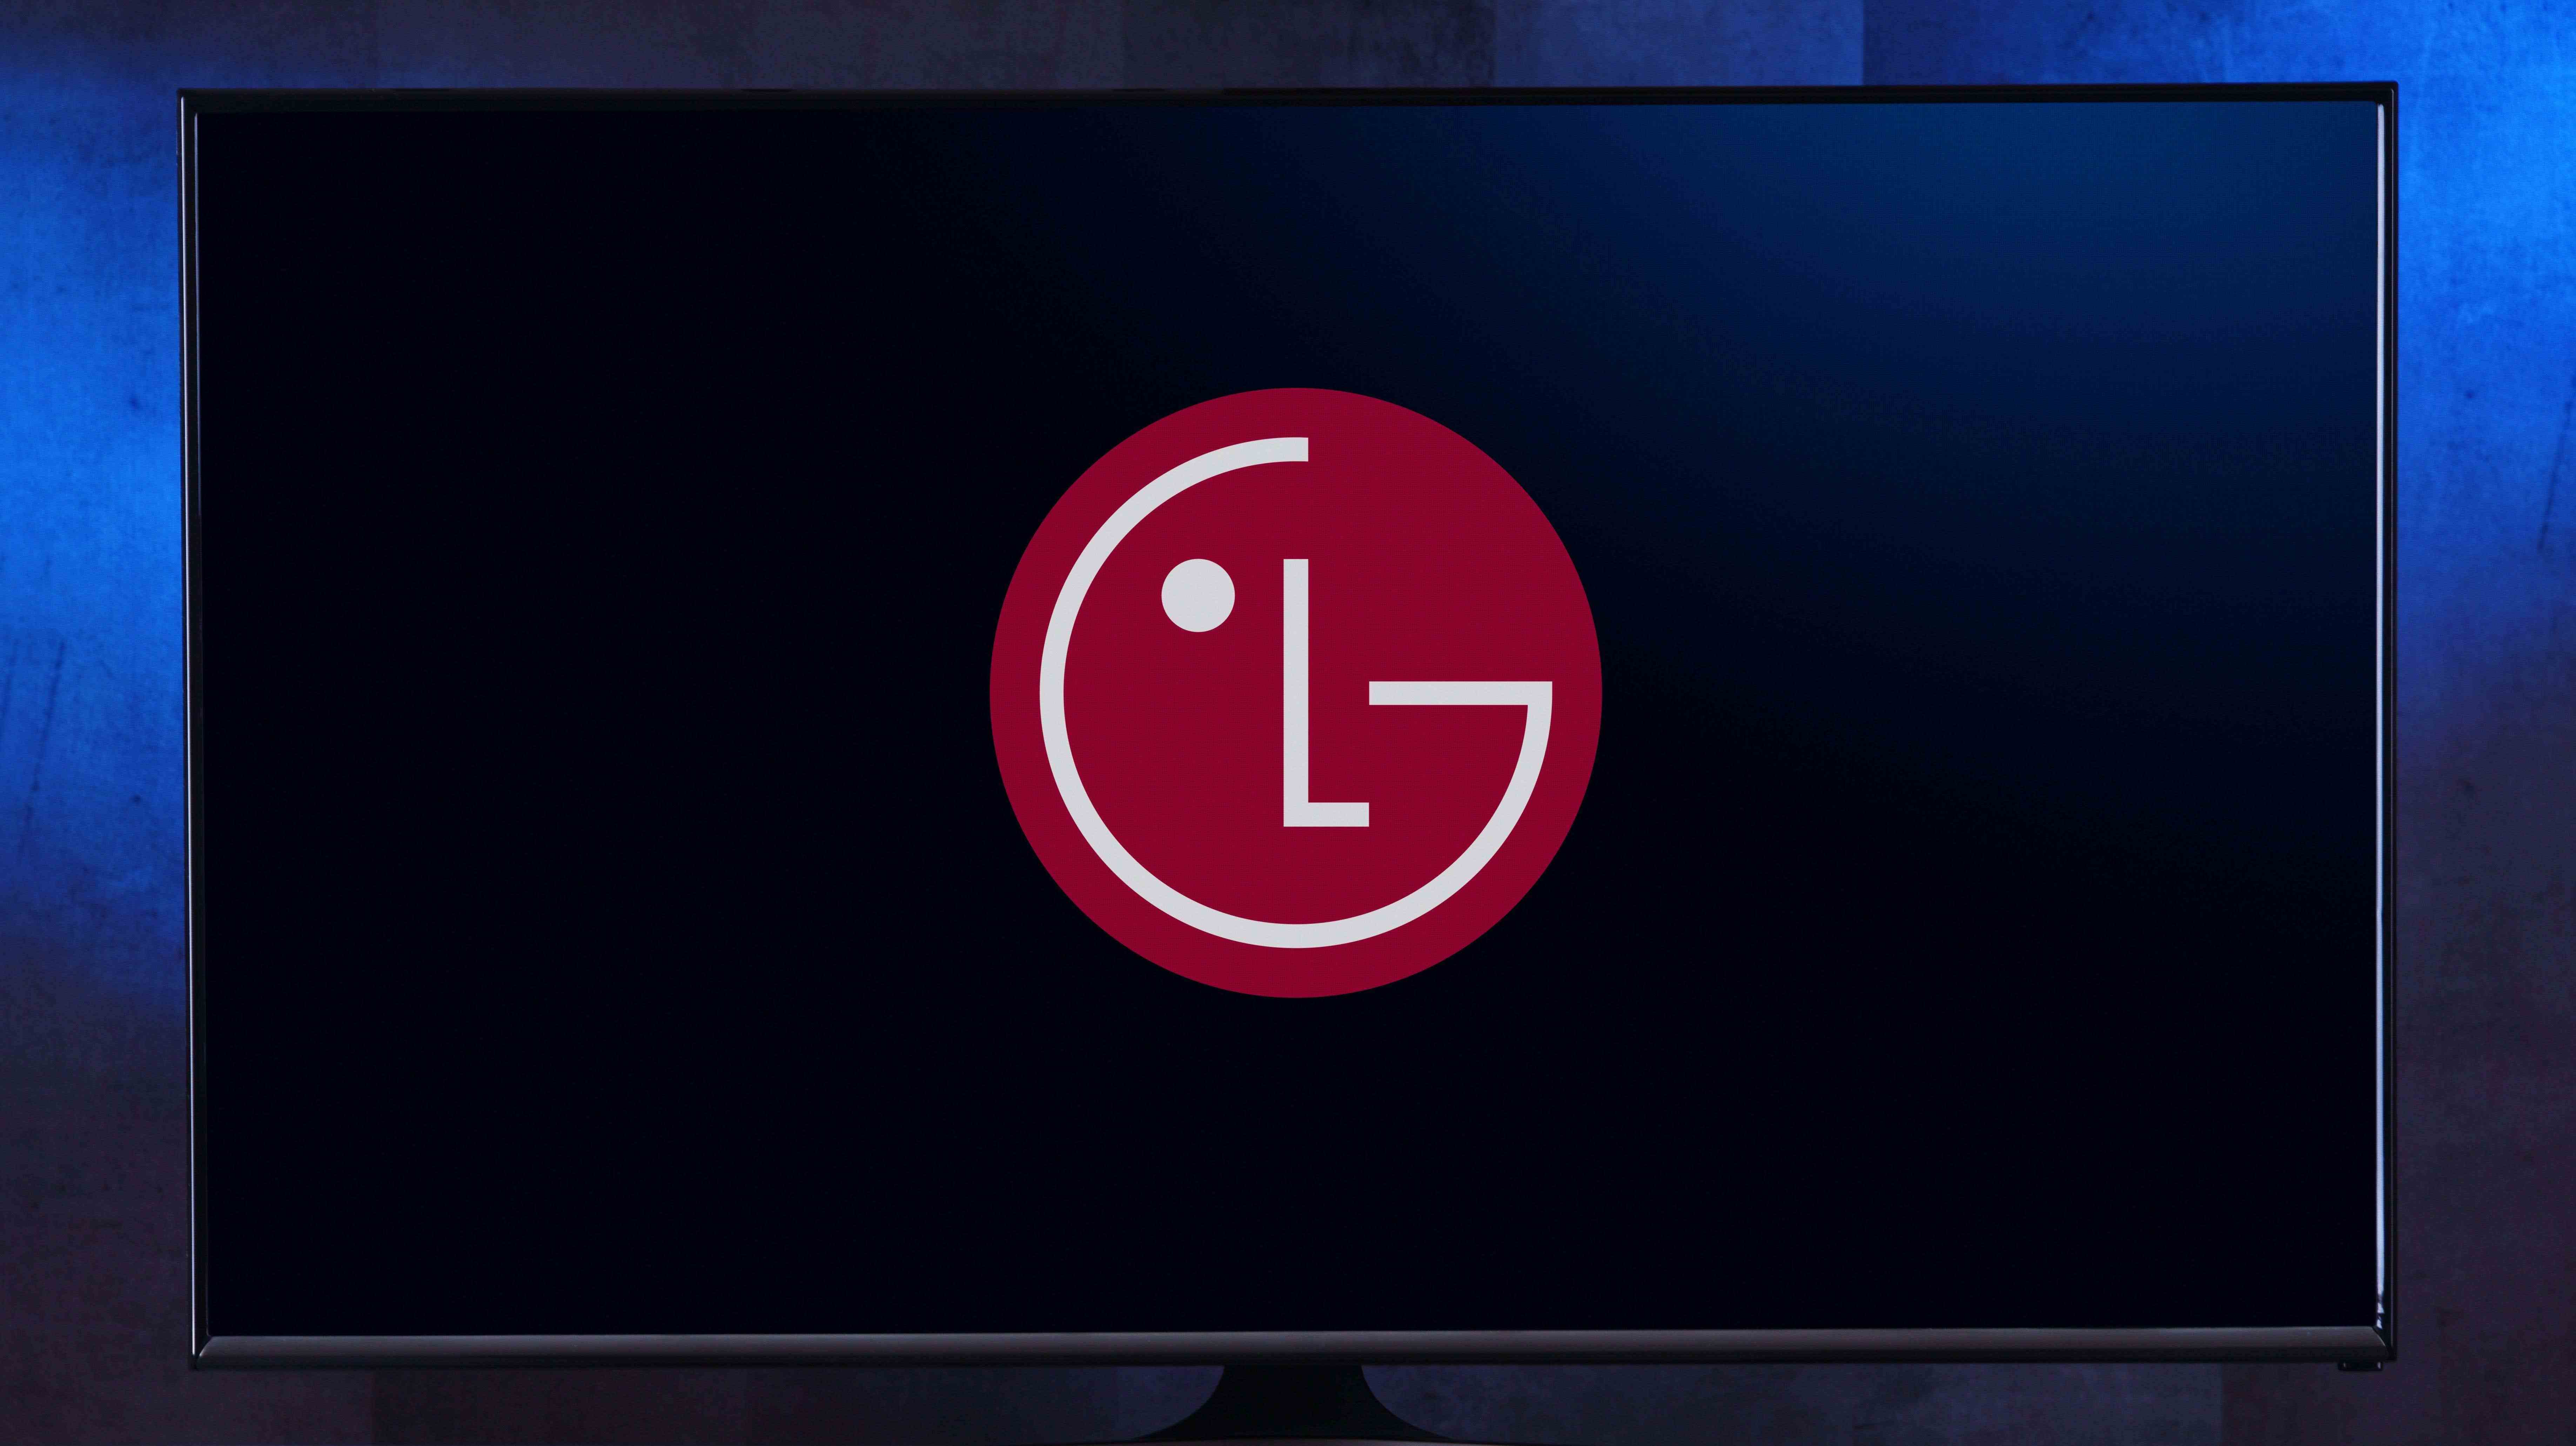 LG Smart TV'nize Hemen Şimdi Yama Uygulamanız Gerekiyor başlıklı makale için resim